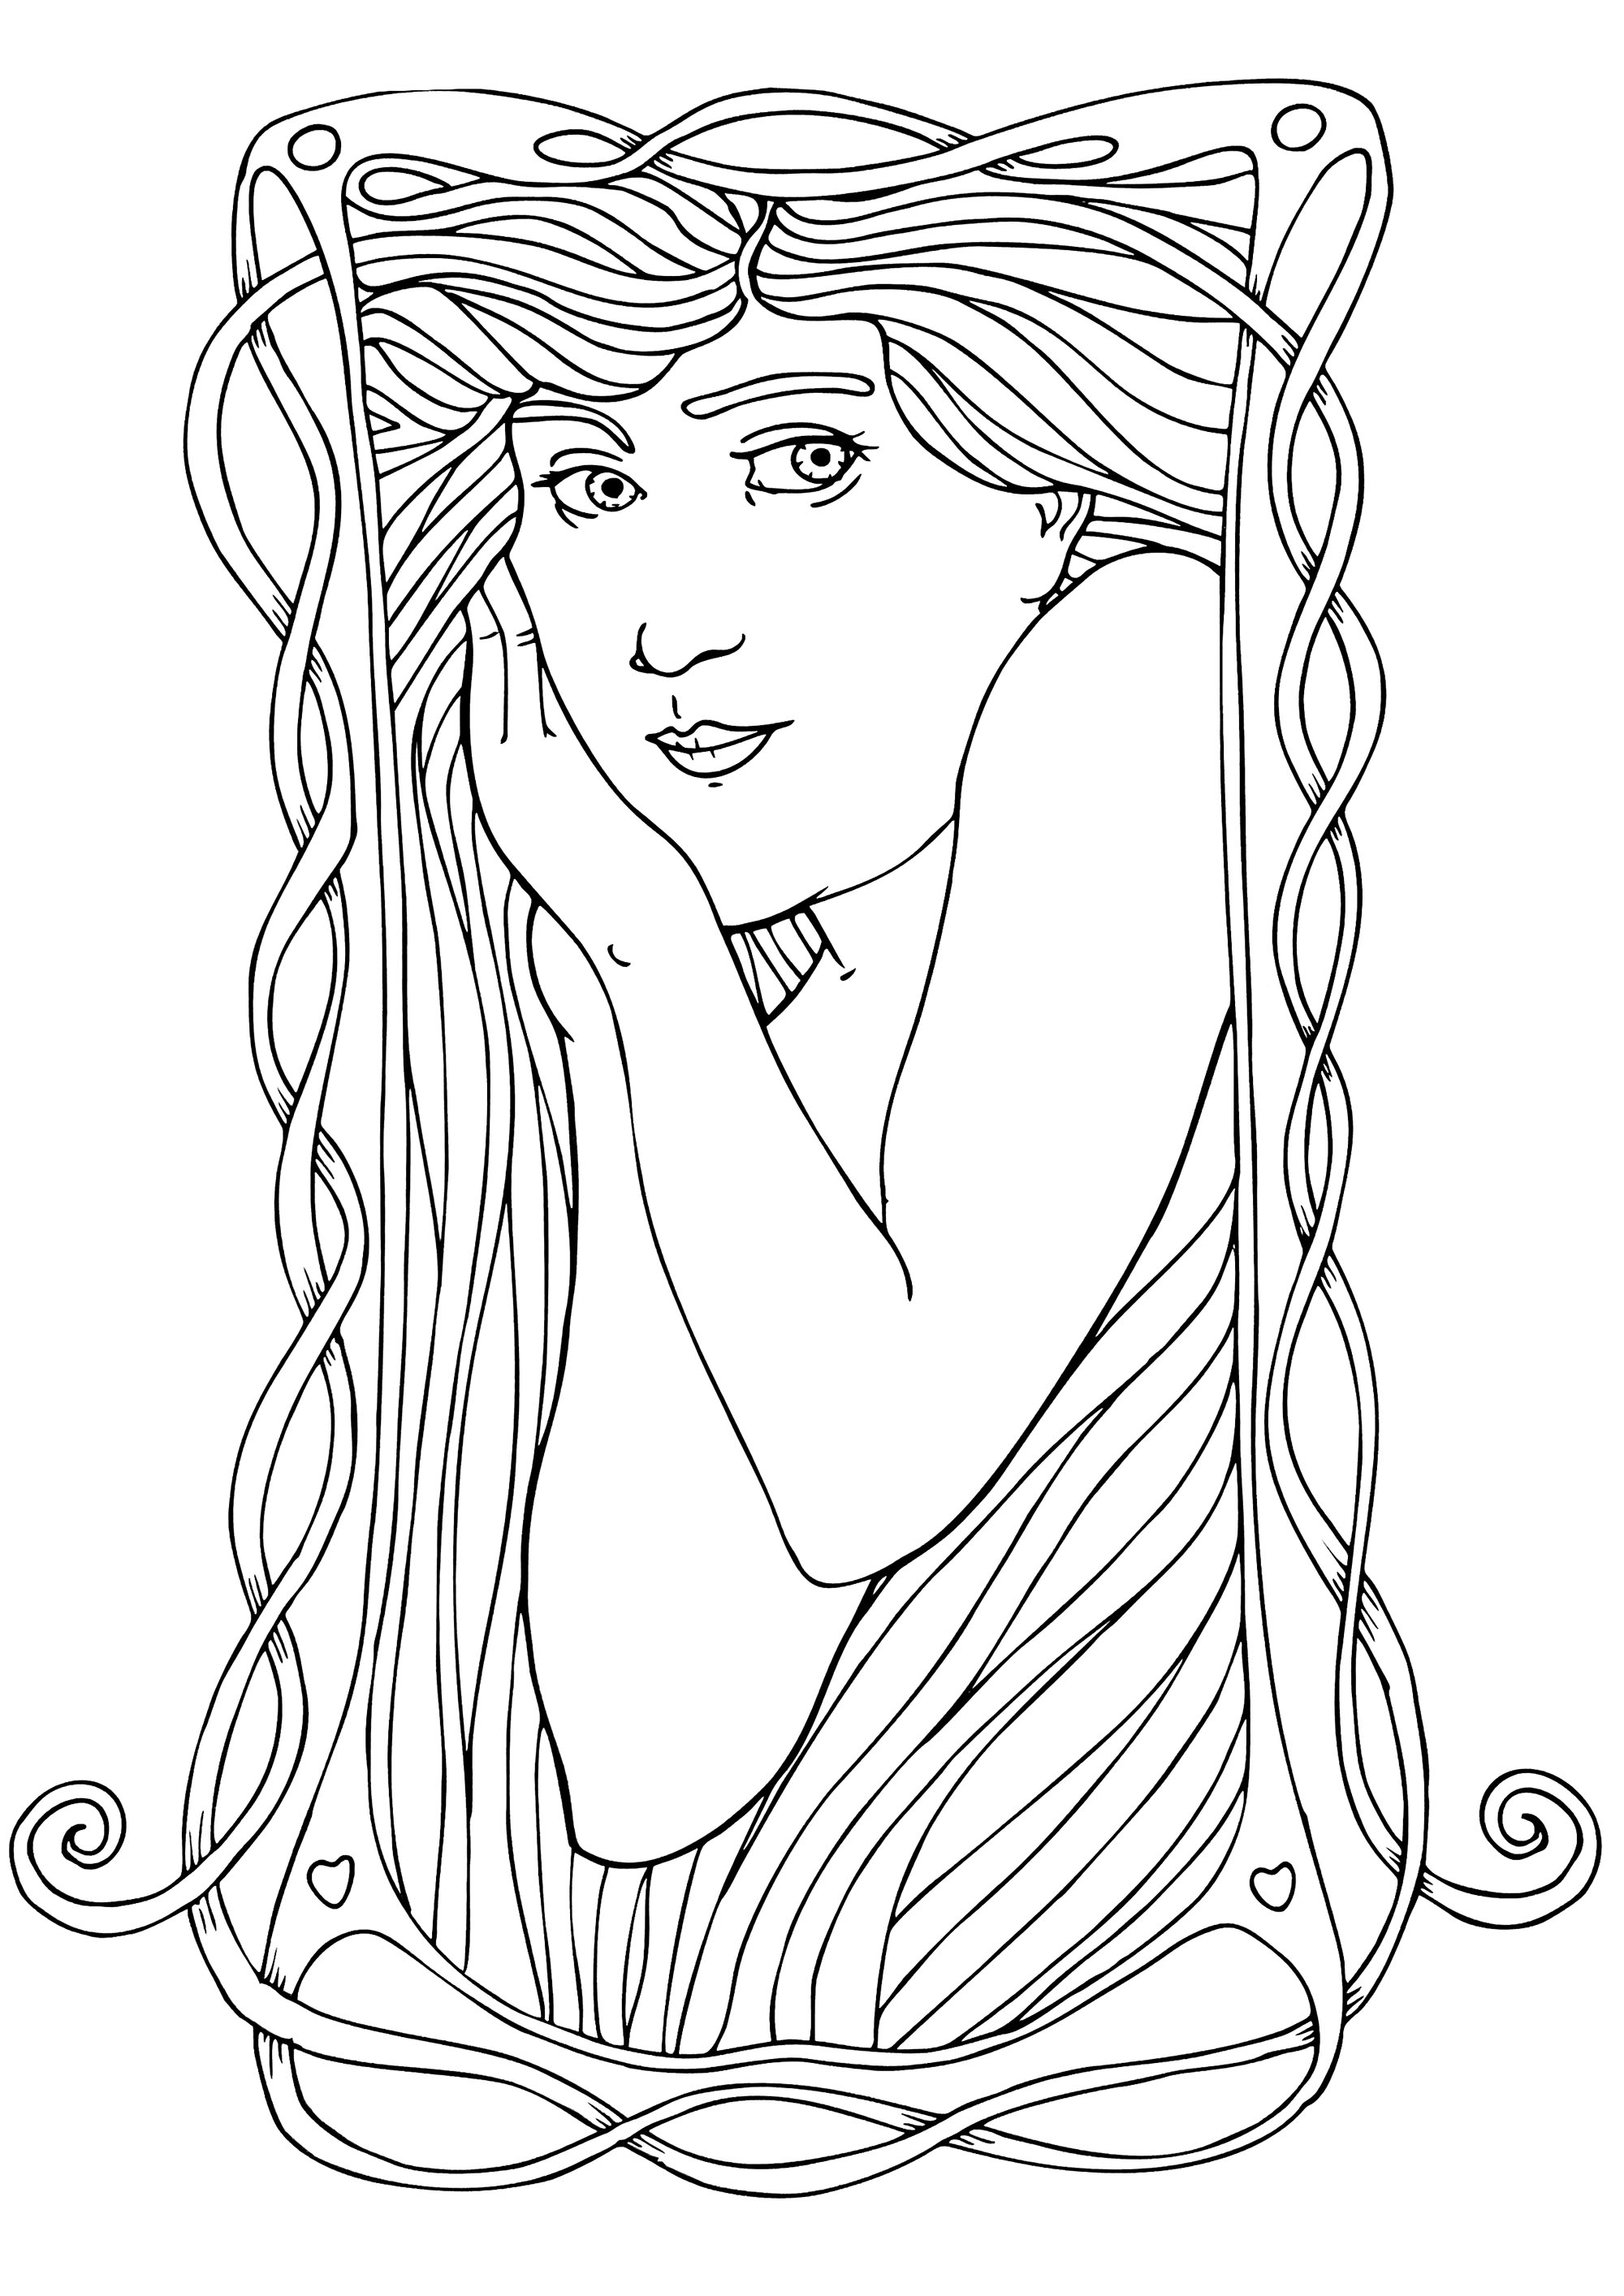 Représentation d'une femme avec le style Art Nouveau, reproduisant le style d'Alfons Mucha, avec peu de détails